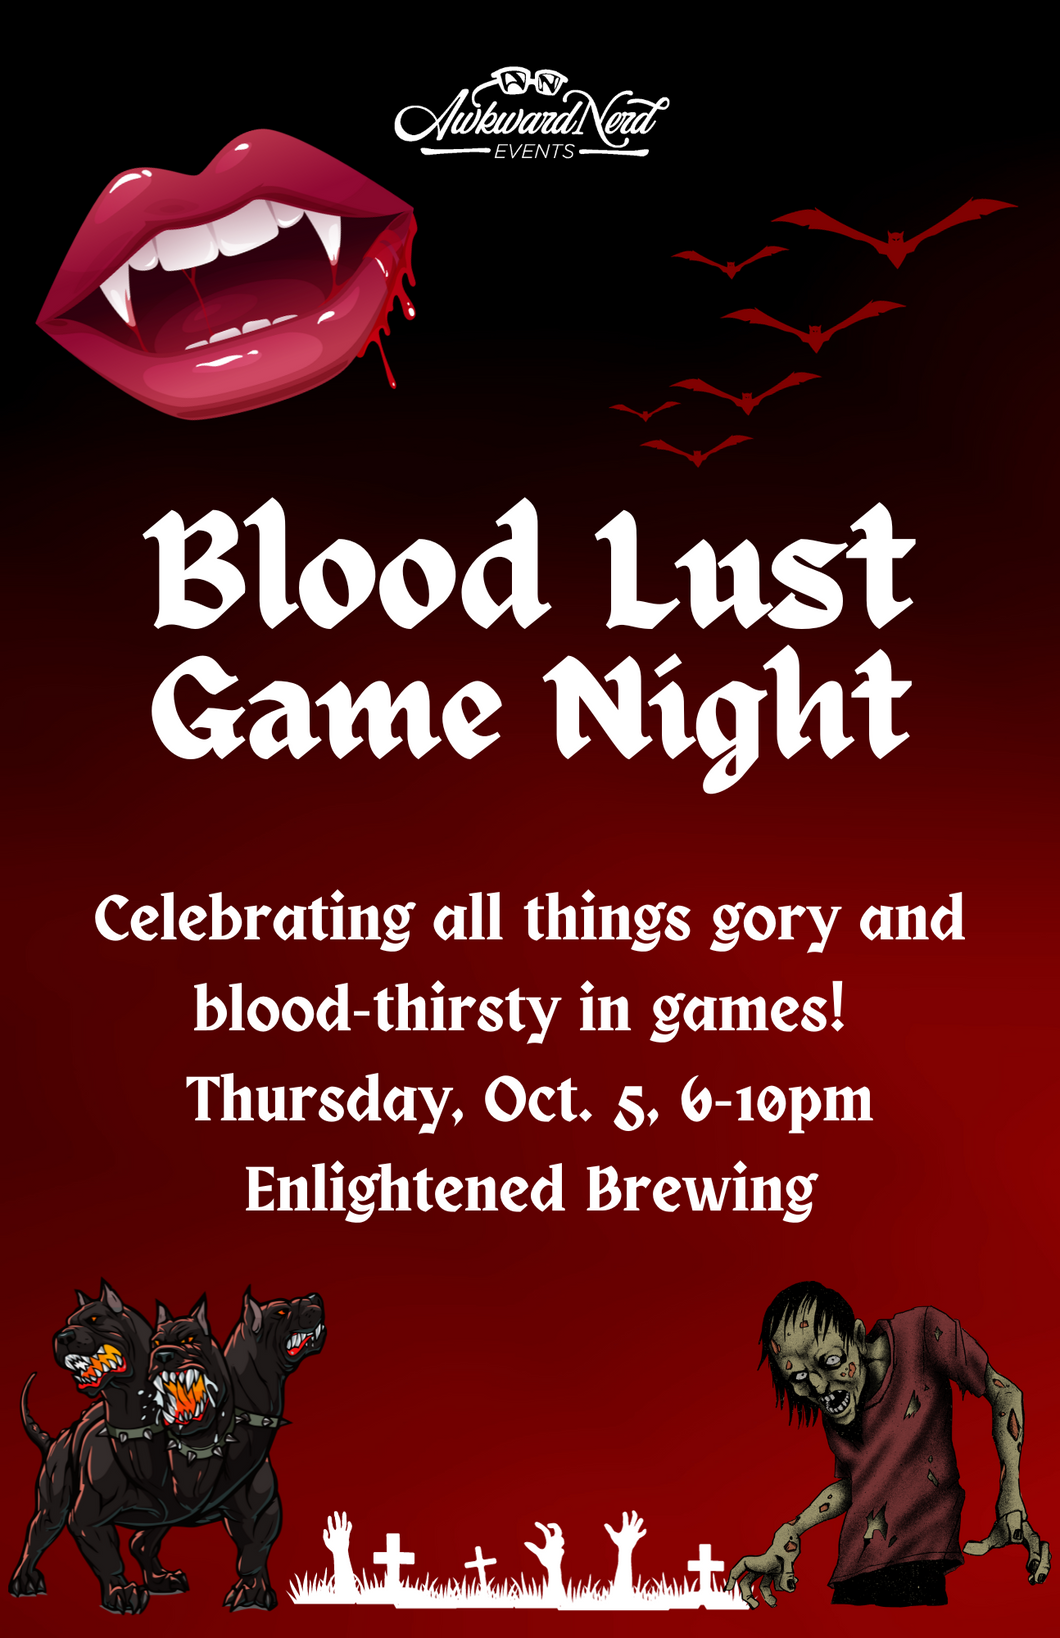 Blood Lust Game Night!